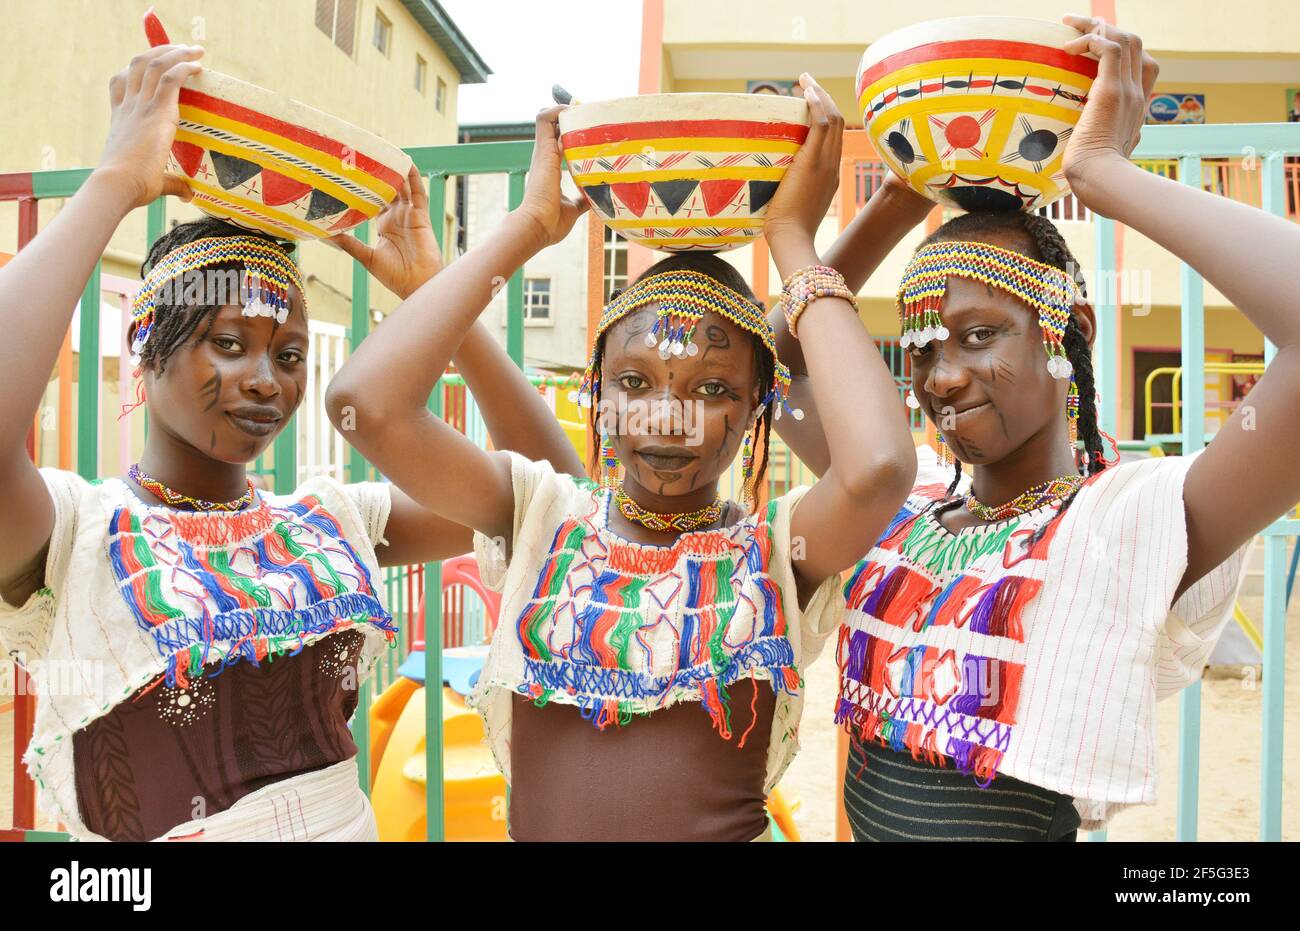 Les jeunes filles nigérianes présentent un costume traditionnel de Hausa/Fulani à l'occasion de leur Journée culturelle, à Lagos, au Nigeria. Banque D'Images